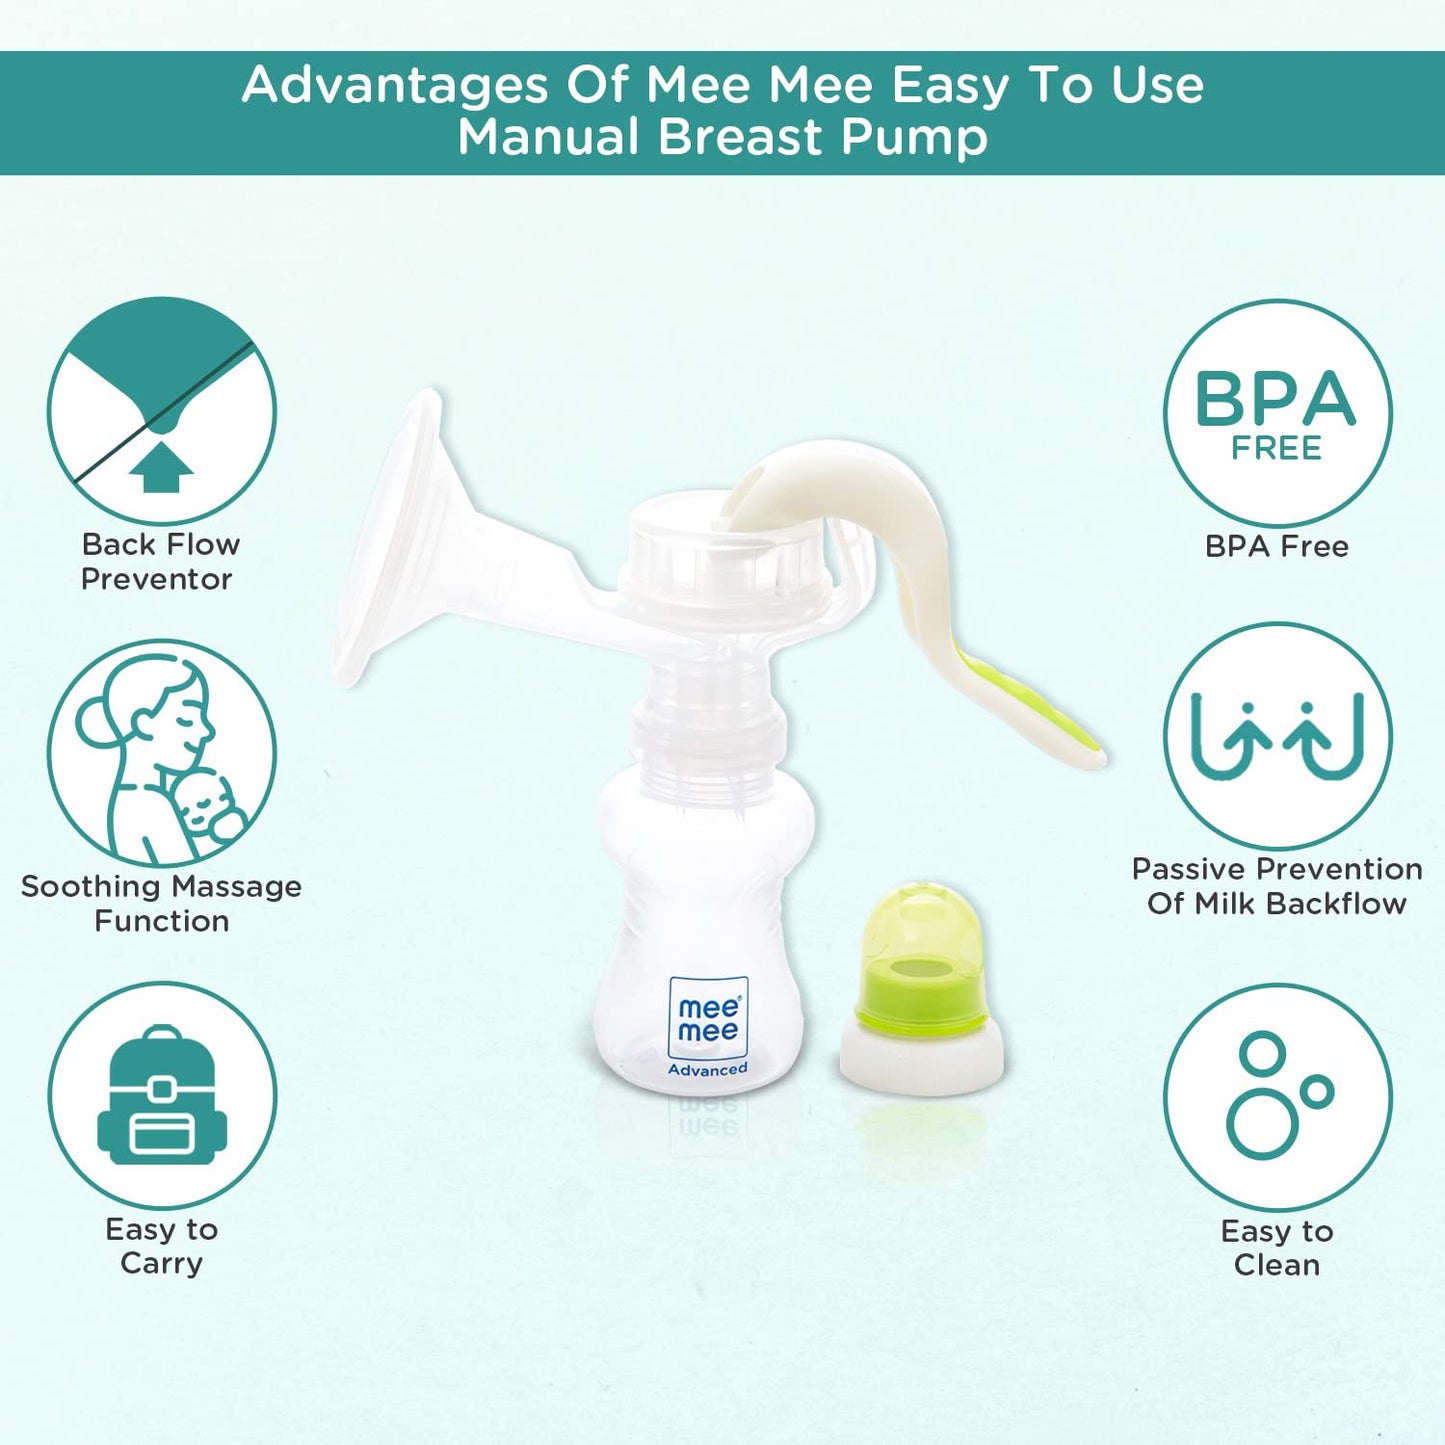 Mee Mee BPA Free Comfort Manual Breast Pump